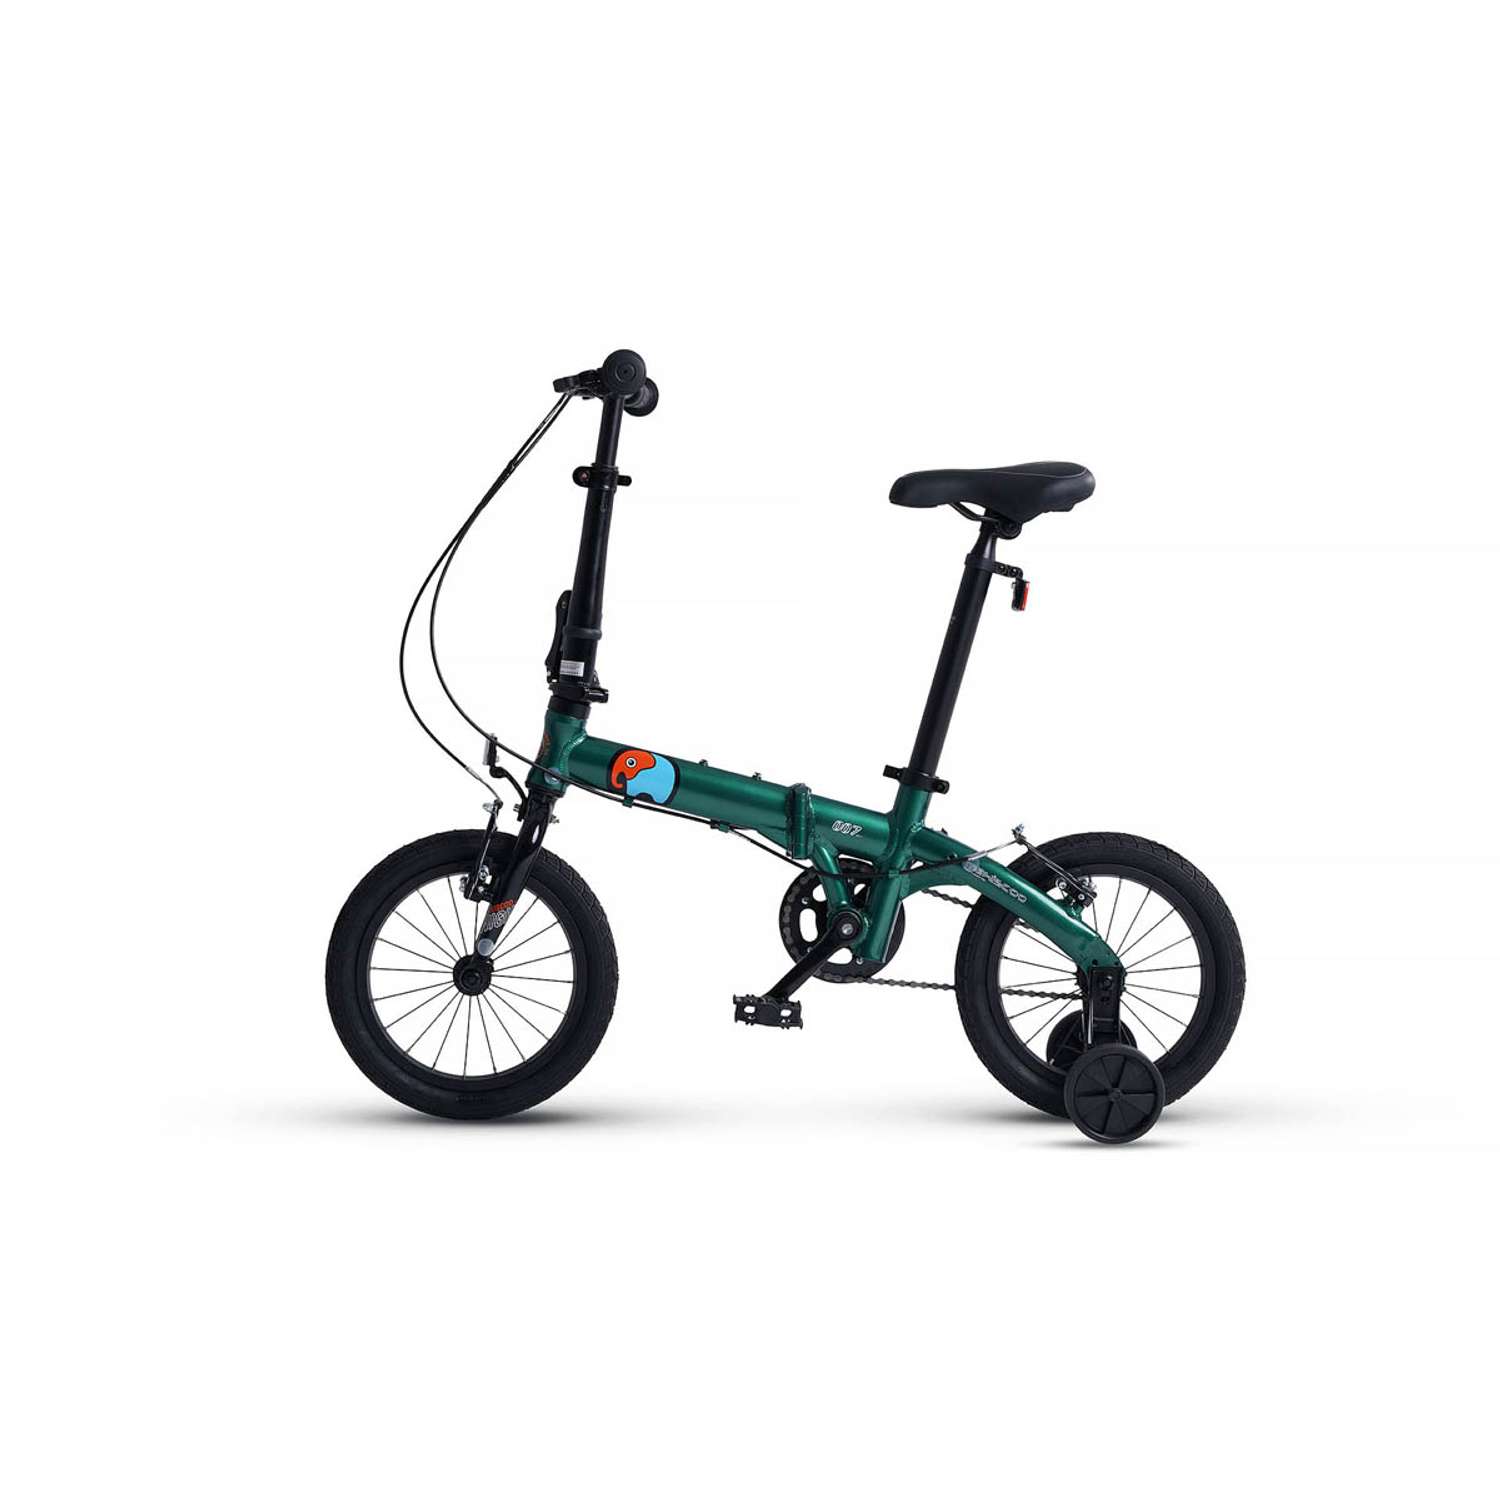 Велосипед Детский Складной Maxiscoo S007 стандарт 14 зеленый - фото 3